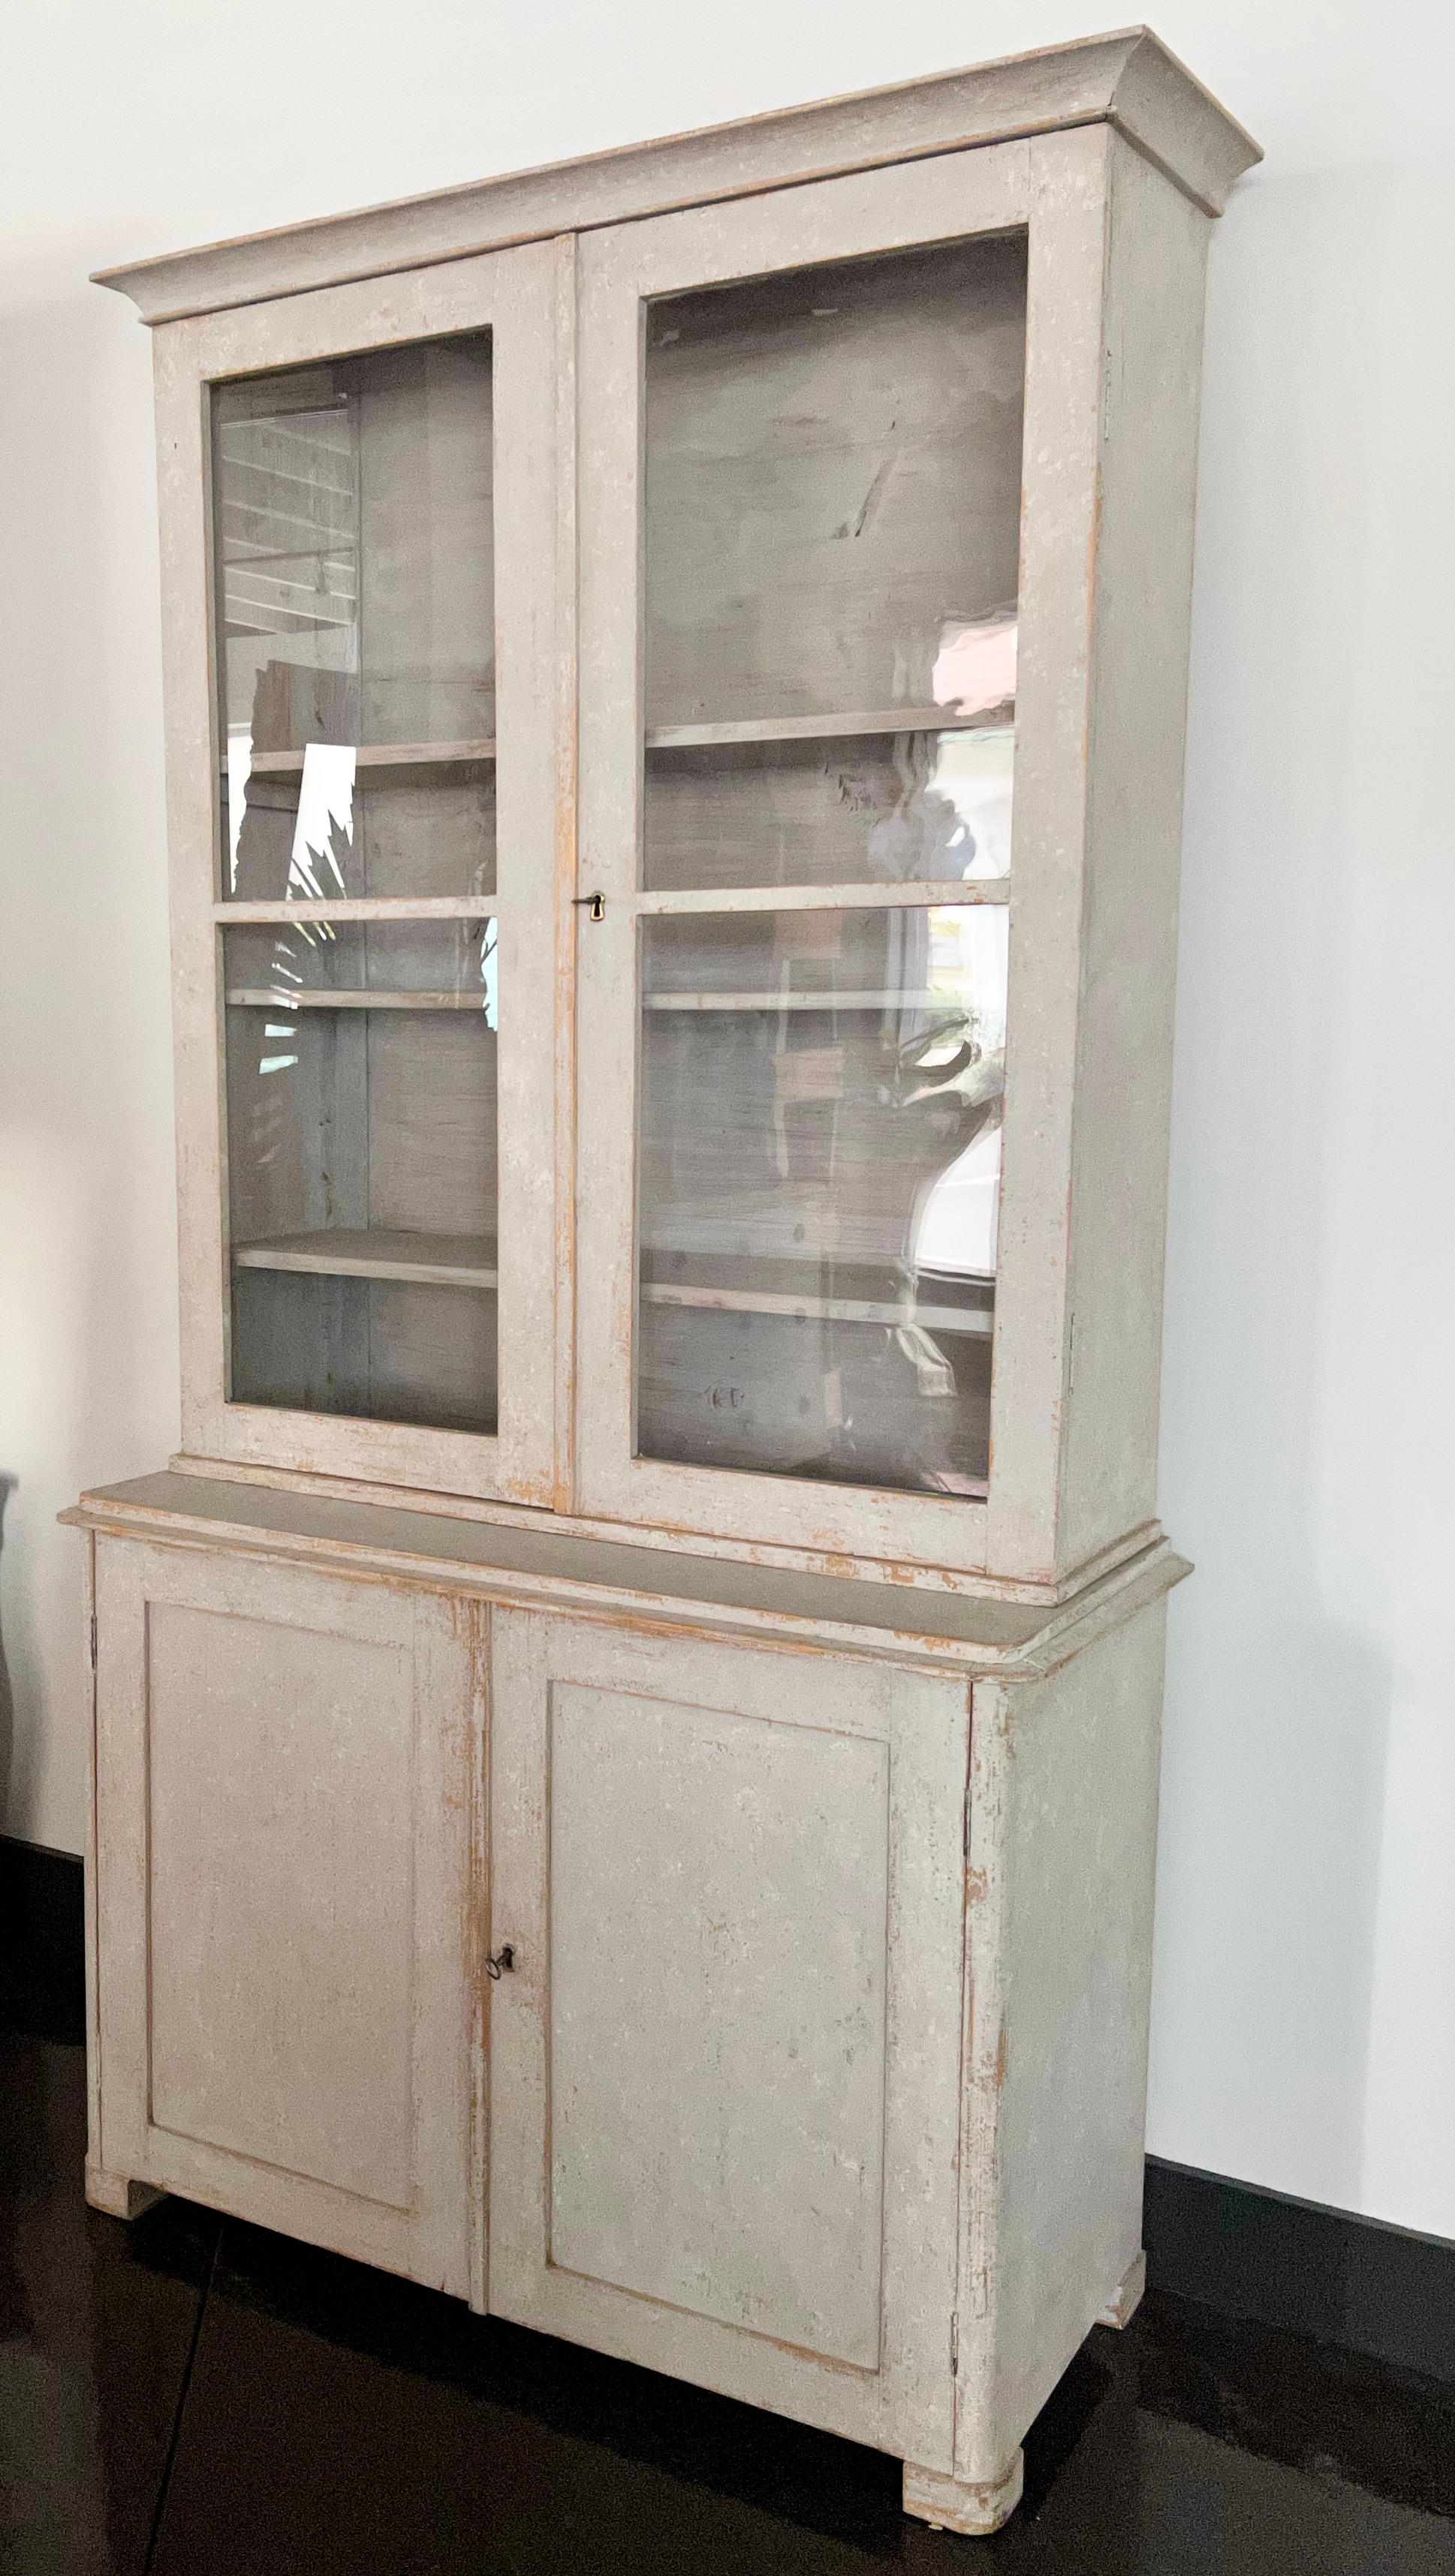 Schwedisches Bücherregal / Vitrine aus dem 19. Jahrhundert, zweiteilig mit Glastüren im späten, einfachen Gustavianischen Stil.
Oberer Bibliotheksteil mit profiliertem Gesims, drei Regale hinter doppelten Glastüren.
Der untere Schrank mit